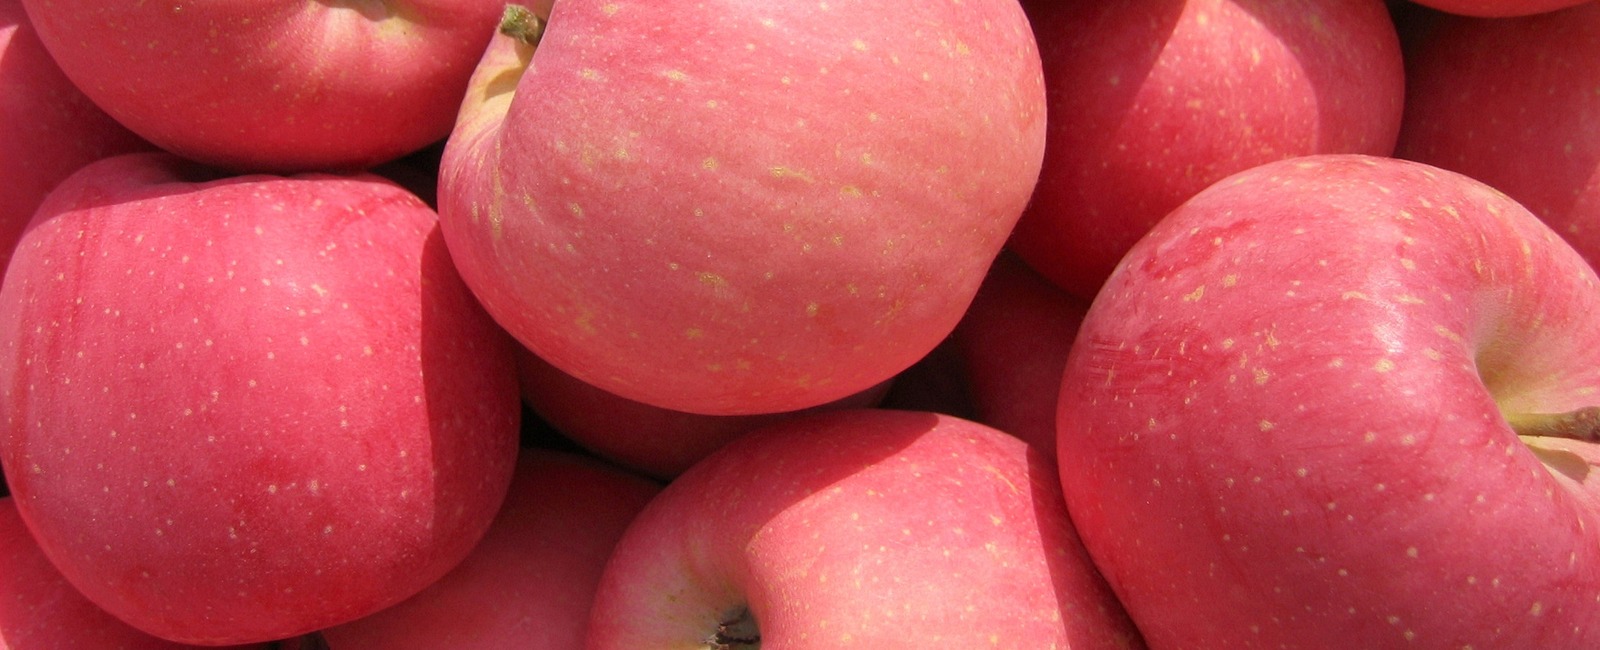 Rôle du magnésium dans la culture des pommes